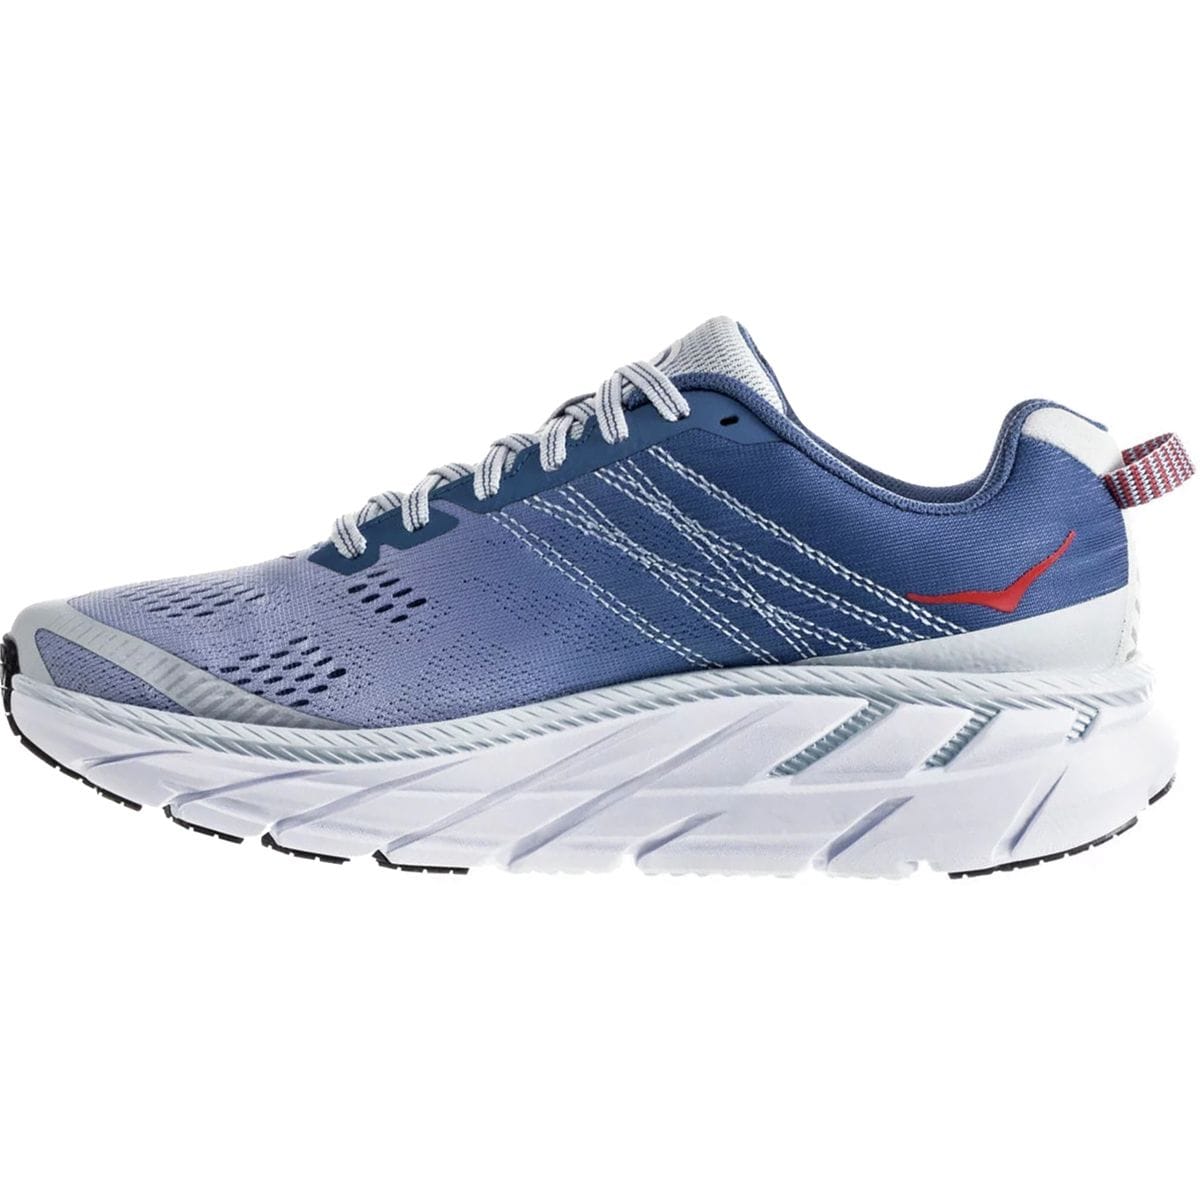 HOKA Clifton 6 Running Shoe - Women's - Footwear